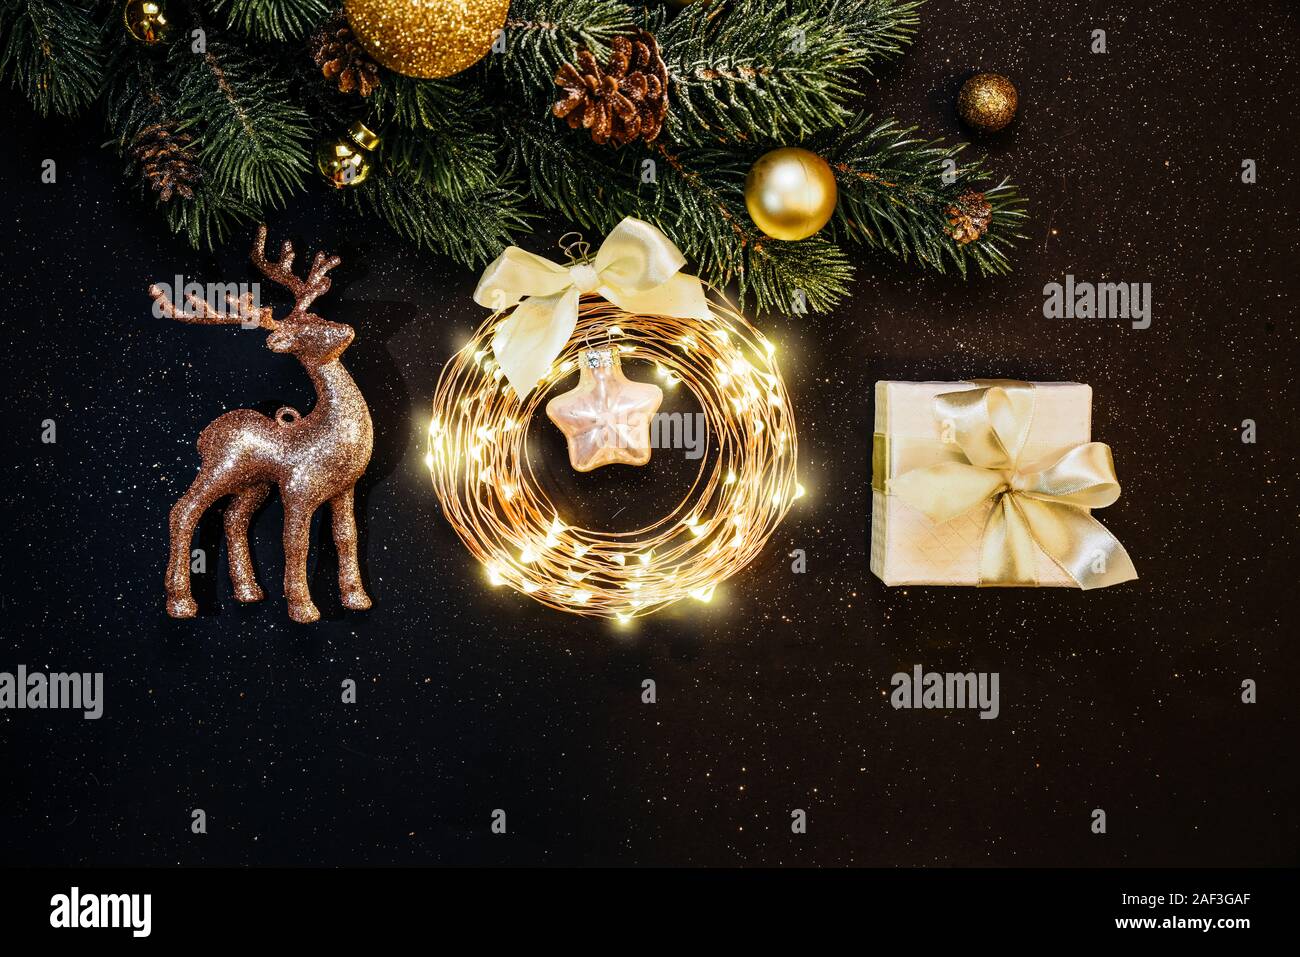 Weihnachtsbaum, Gold Dekorationen, Rentier, Garland, Geschenk auf dunklem Hintergrund: Stockfoto